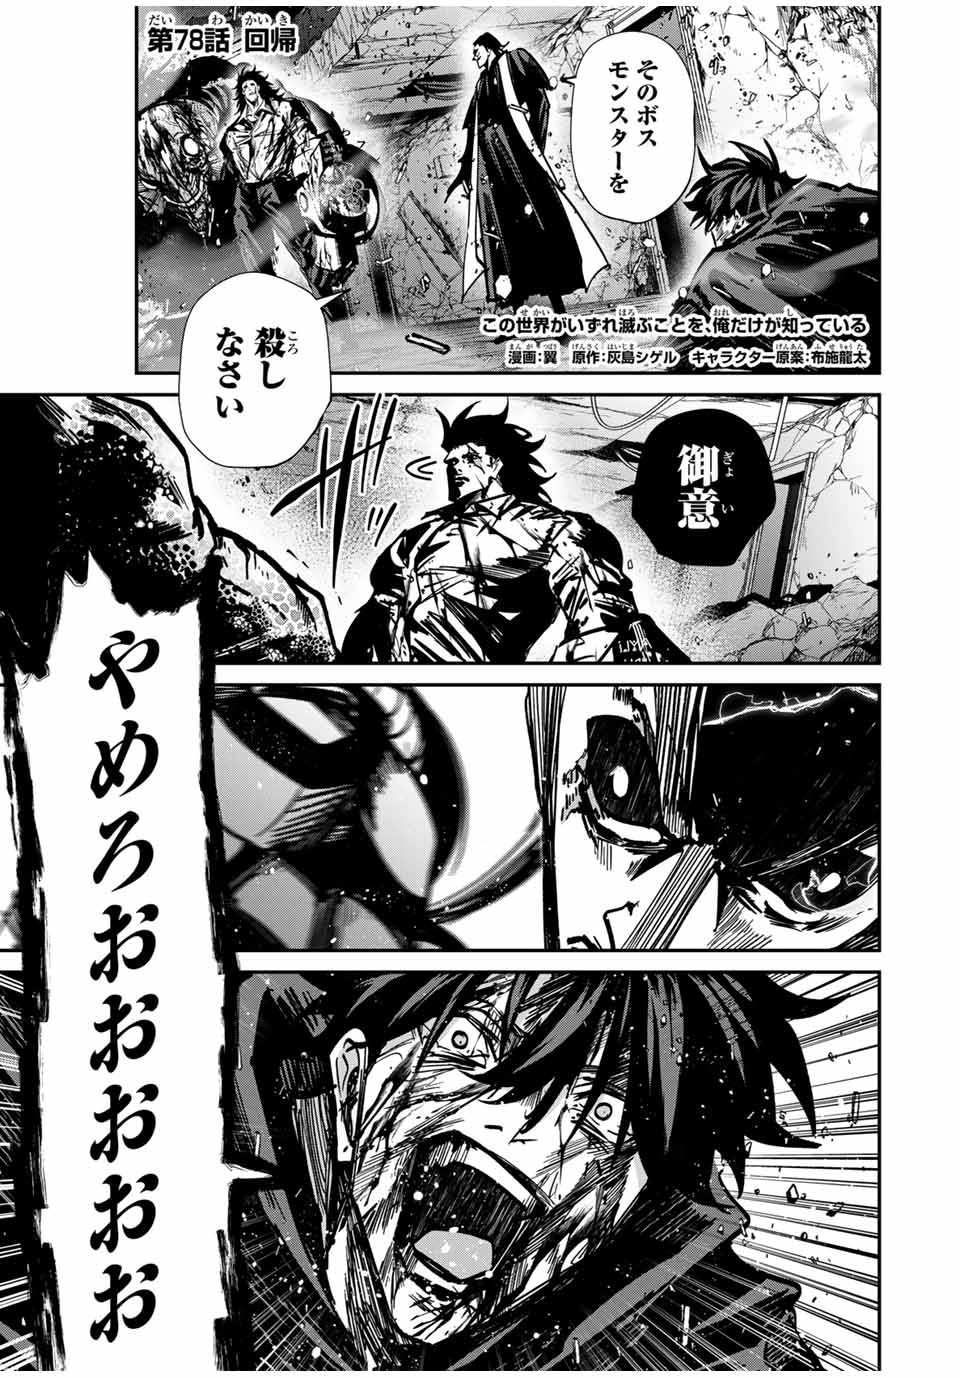 Kono Sekai ga Izure Horobu Koto wo, Ore dake ga Shitte Iru - Chapter 78 - Page 1